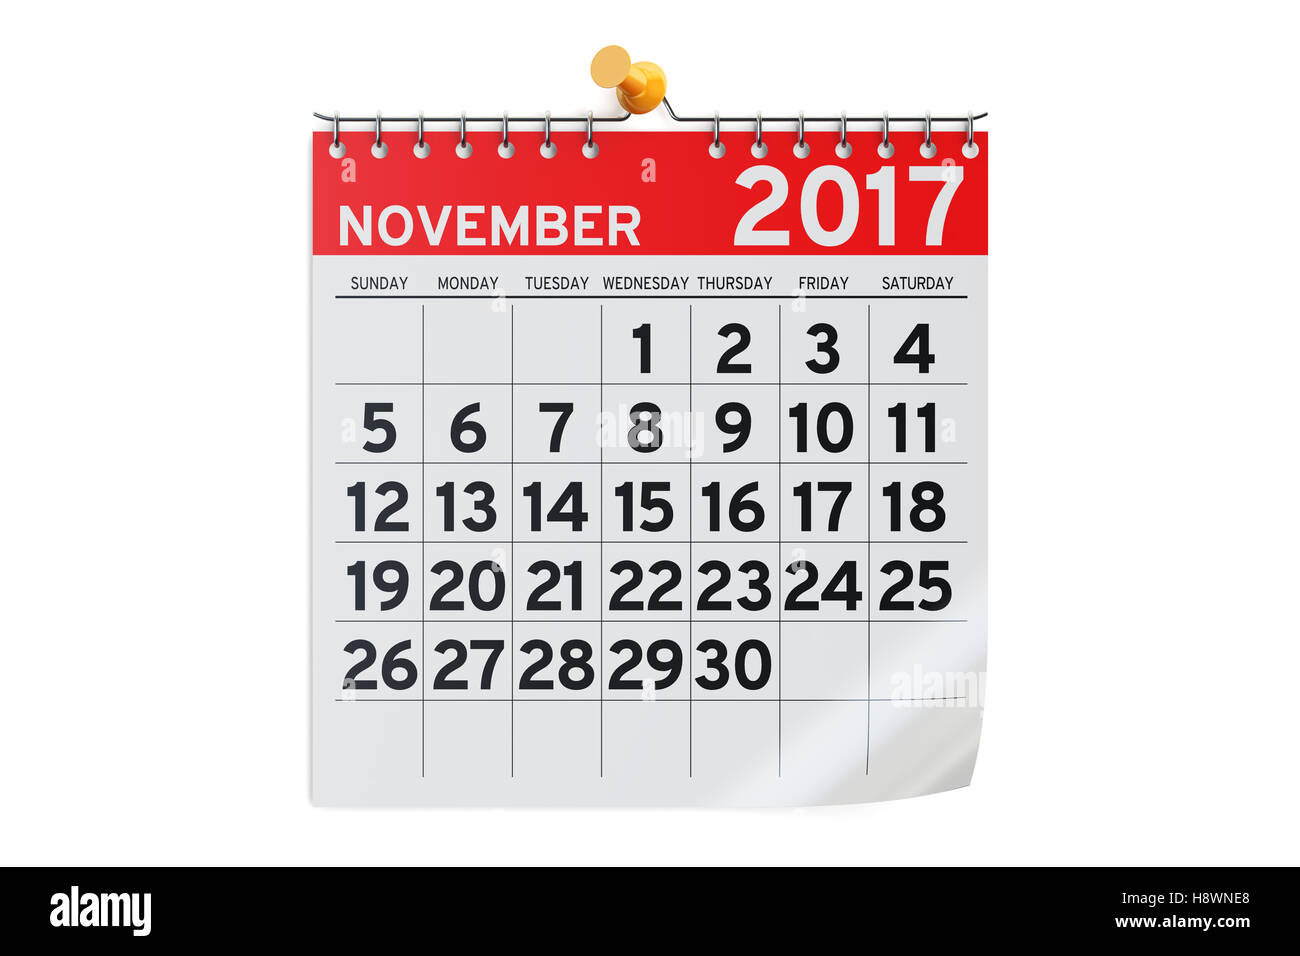 Denemarken Interactie als resultaat Kalender November 2017, 3D-Rendering isolierten auf weißen Hintergrund  Stockfotografie - Alamy